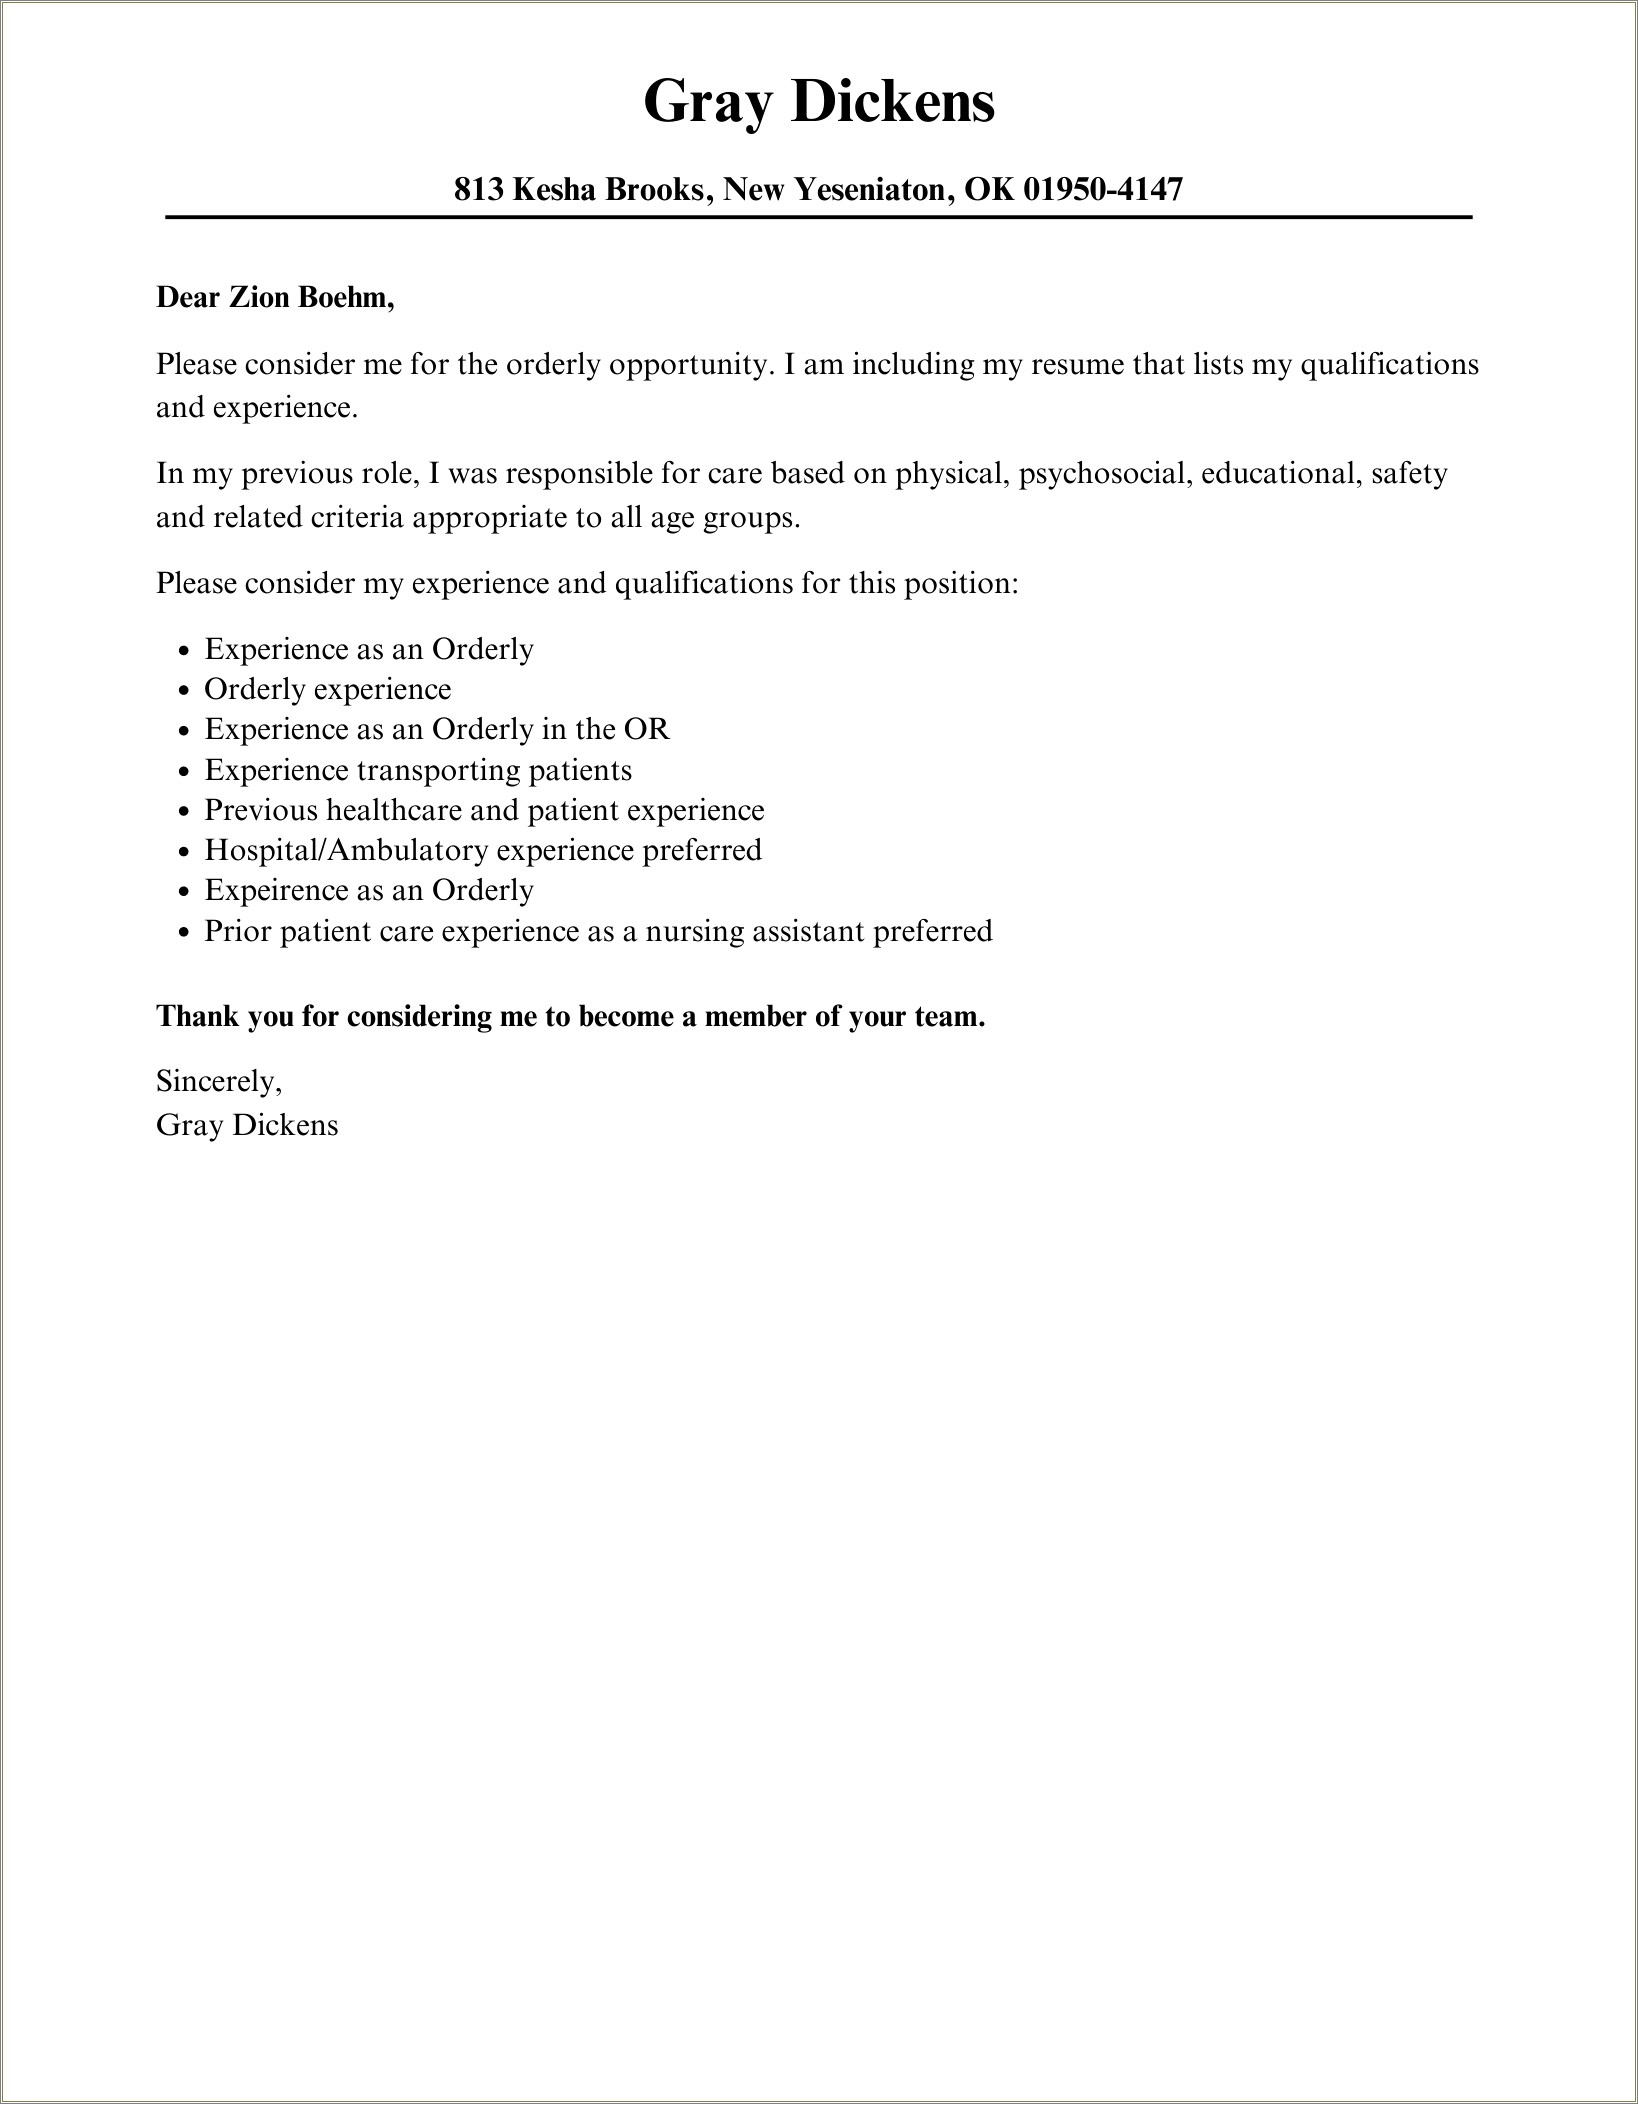 Resume Cover Letter For Hospital Job